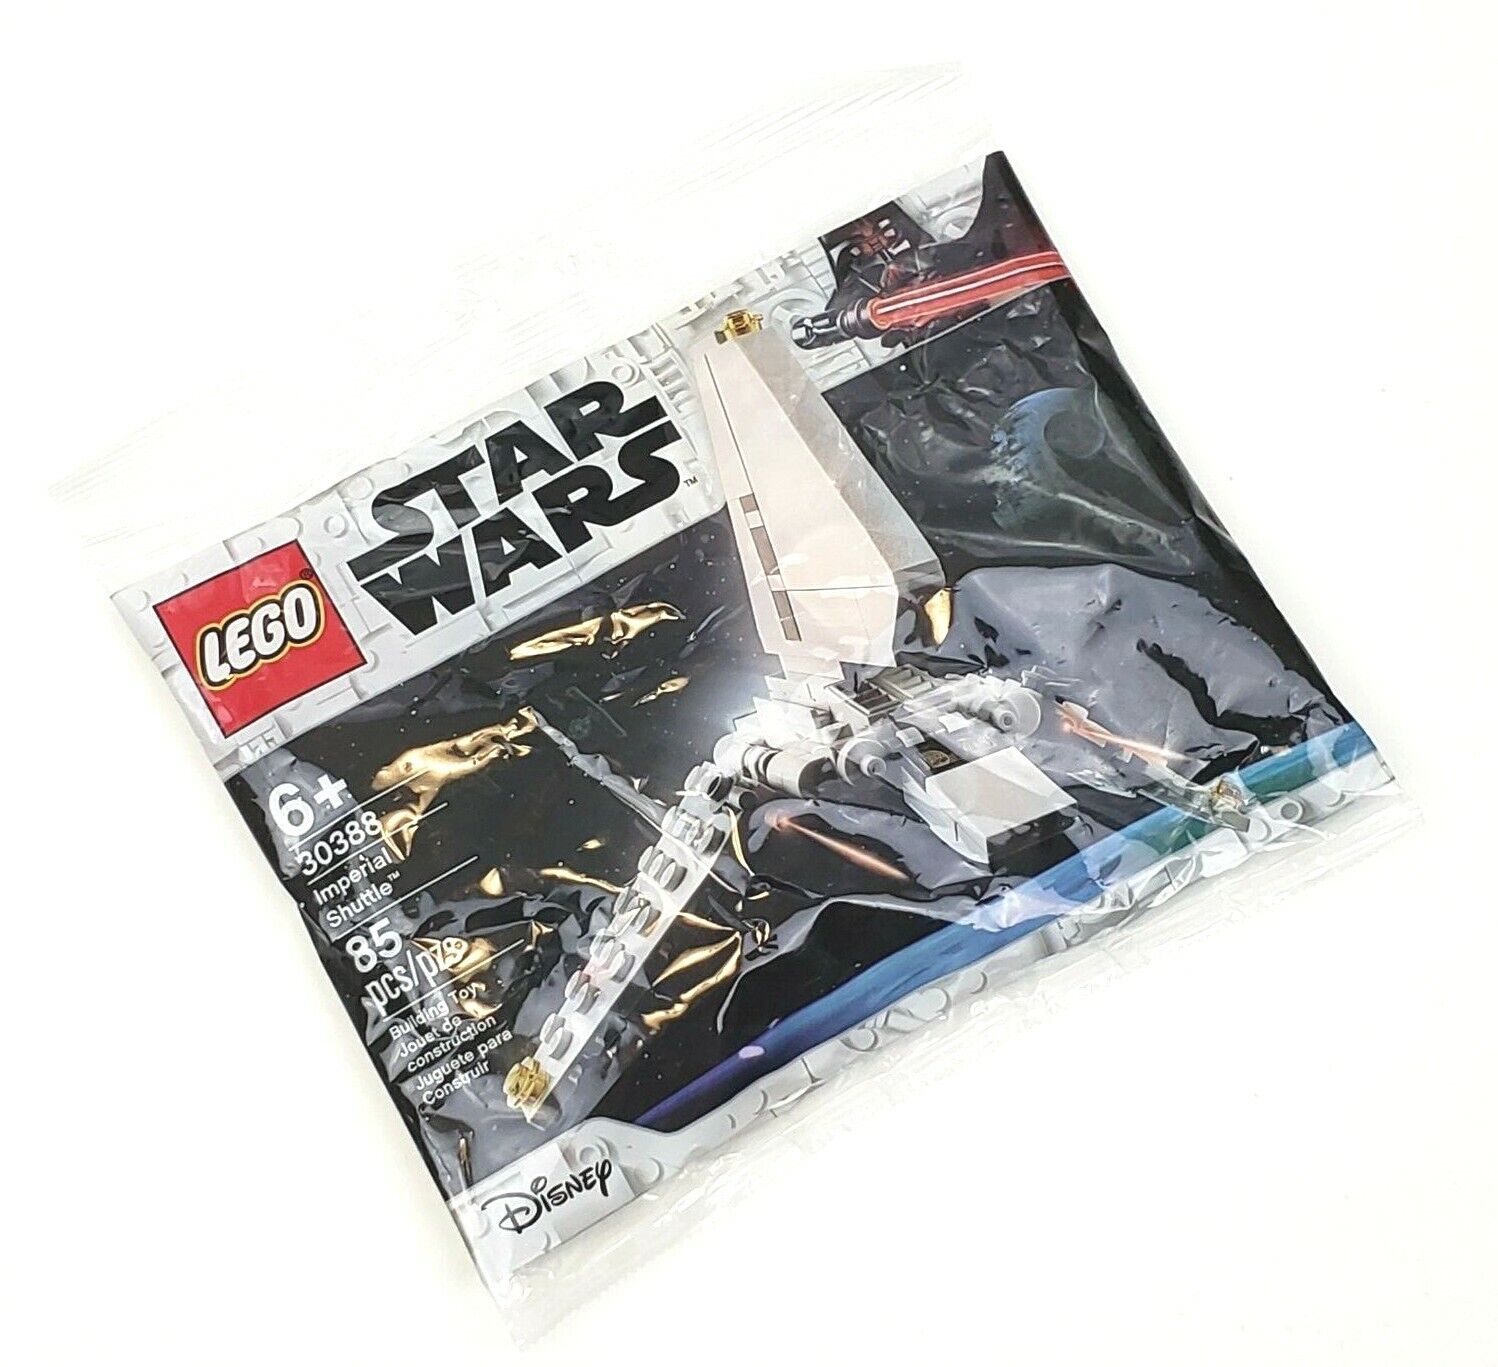 LEGO - 30388 - Star Wars - Imperial Shuttle - 85 Pcs Polybag 2021 GWP LEGOland